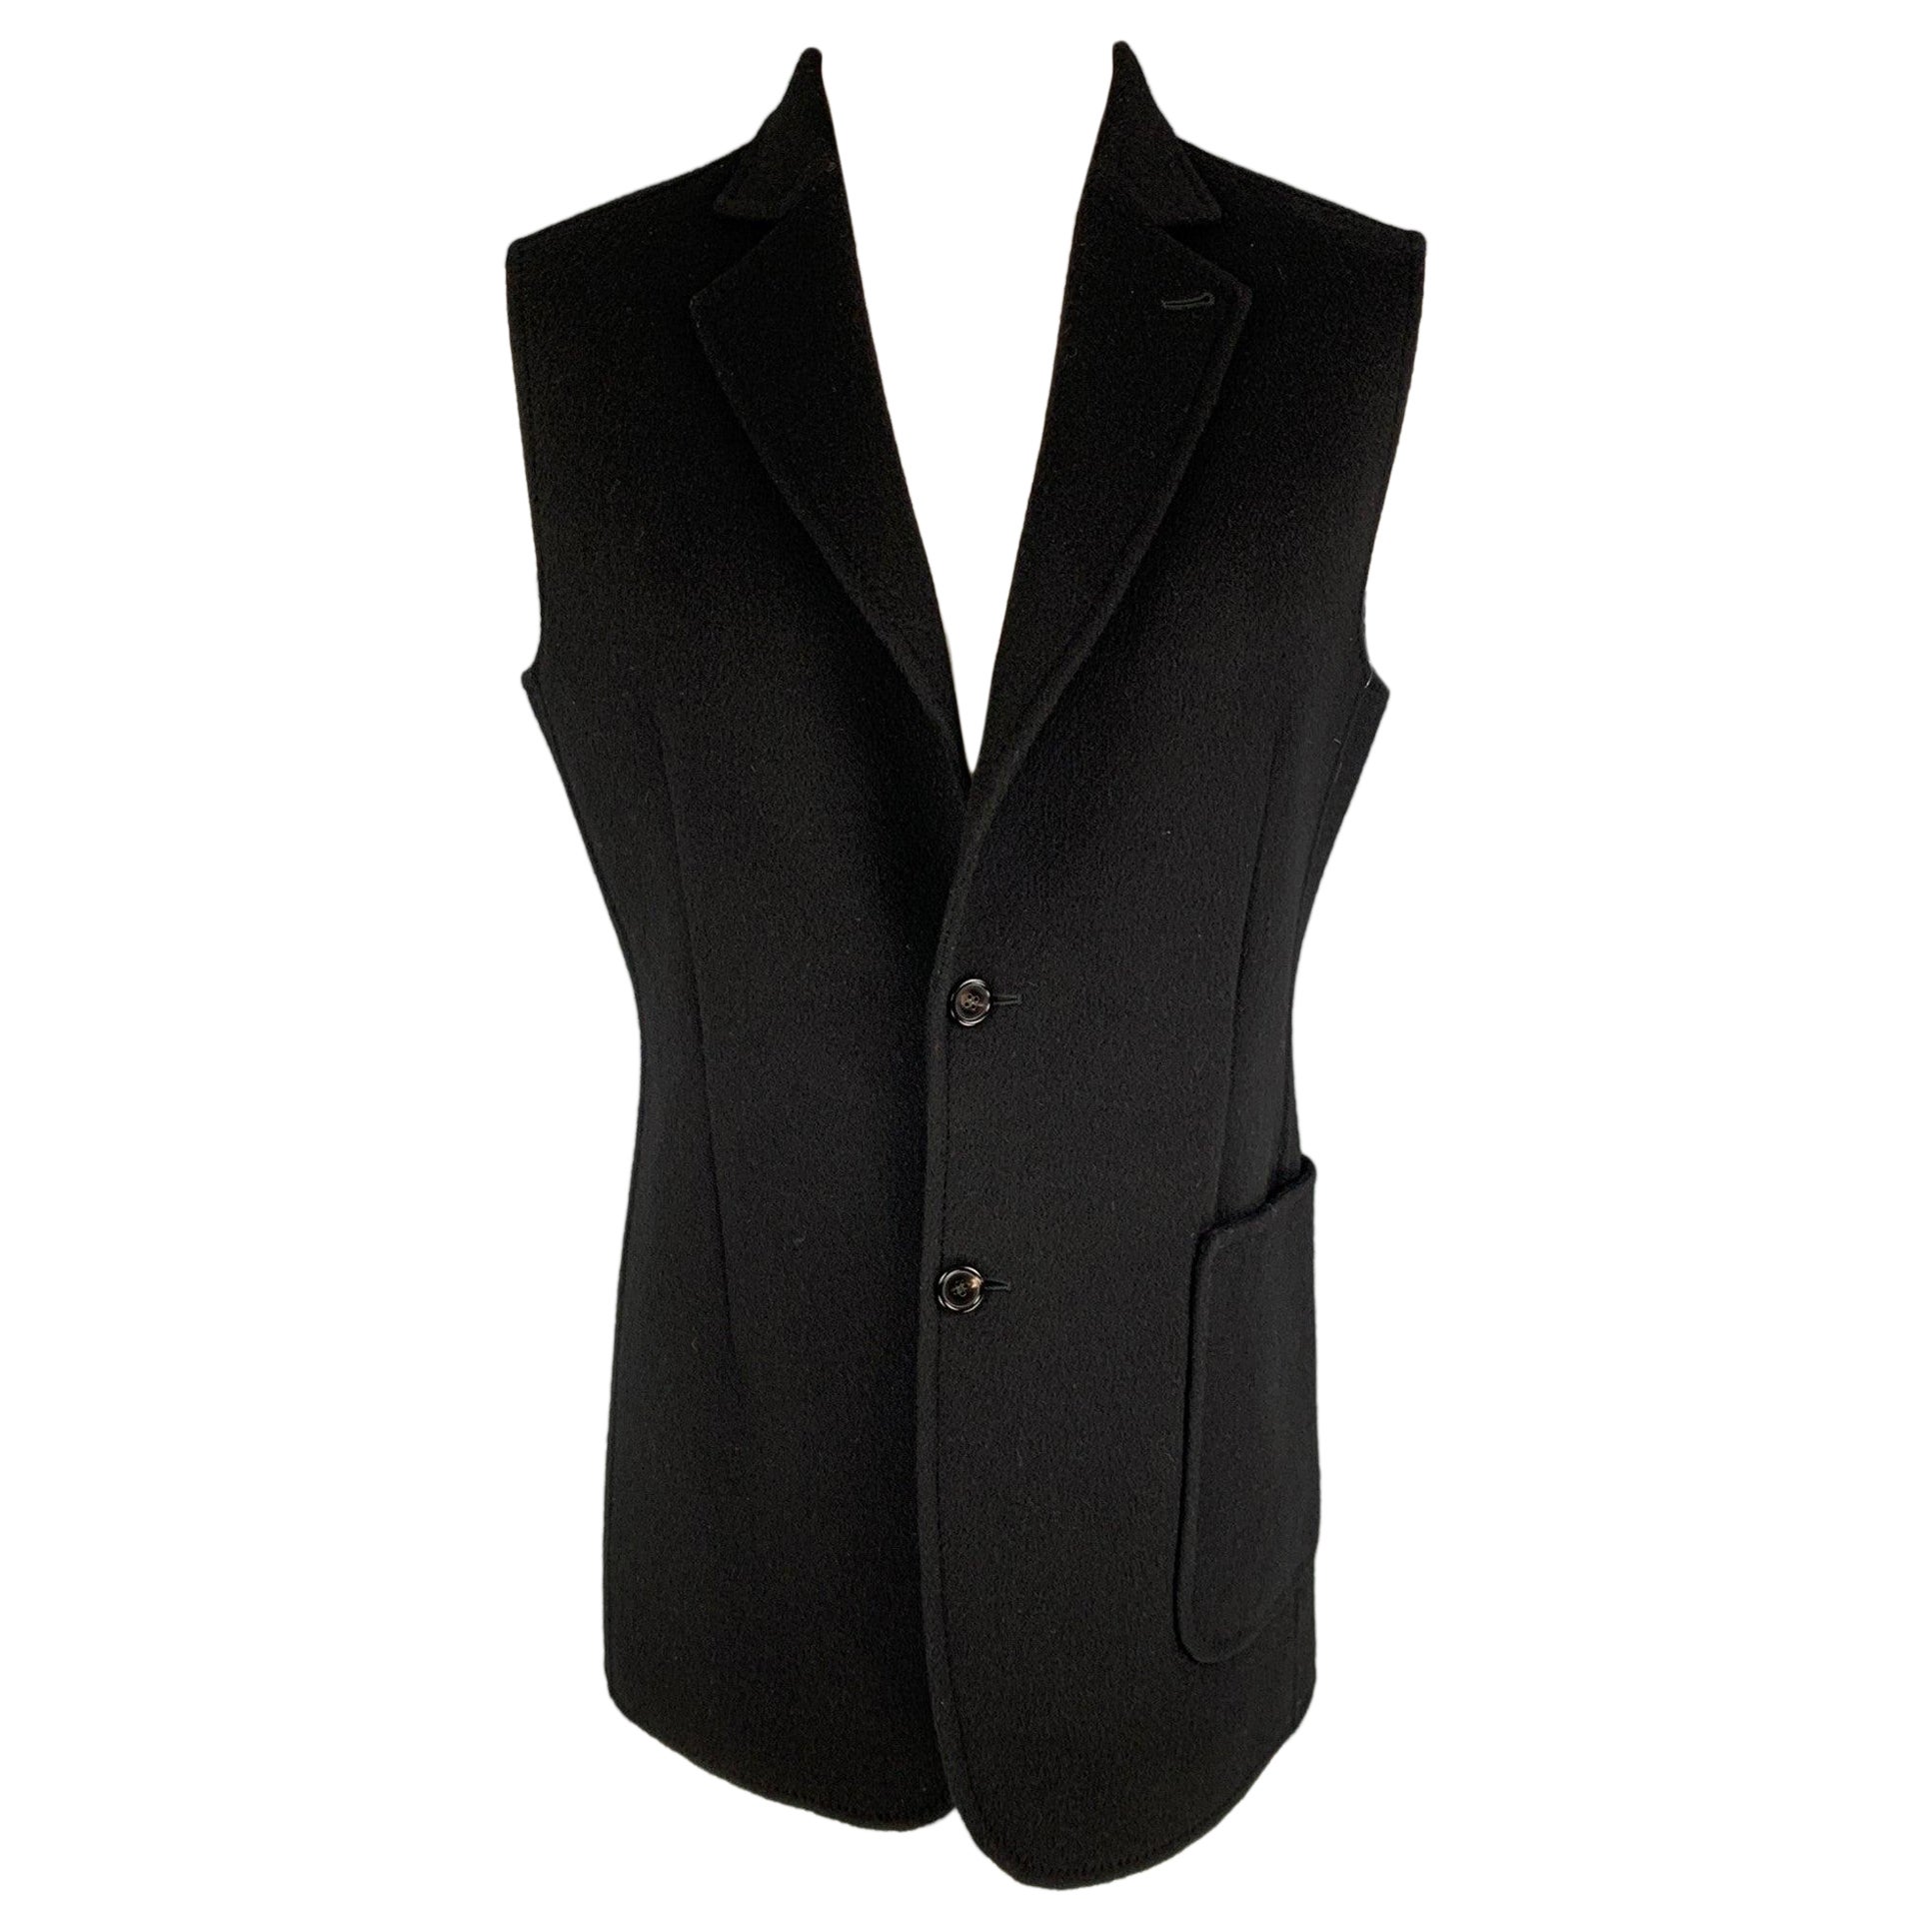 RAF SIMONS Size 40 Black Virgin Wool Notch Lapel Vest For Sale